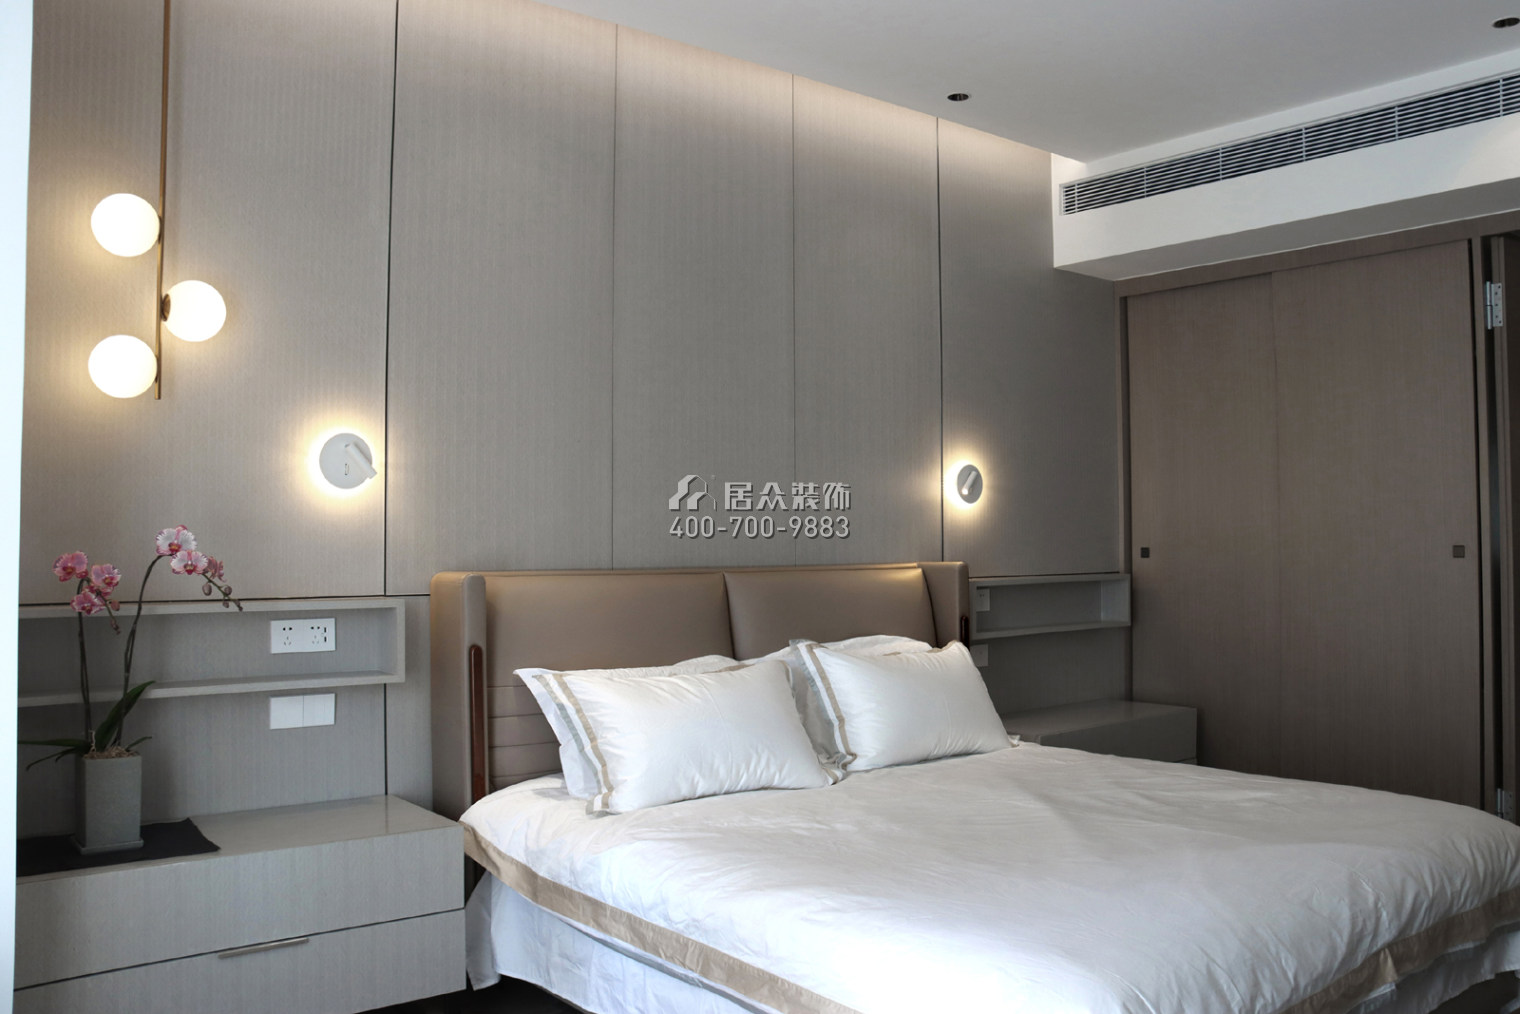 华润城润府二期206平方米现代简约风格平层户型卧室装修效果图